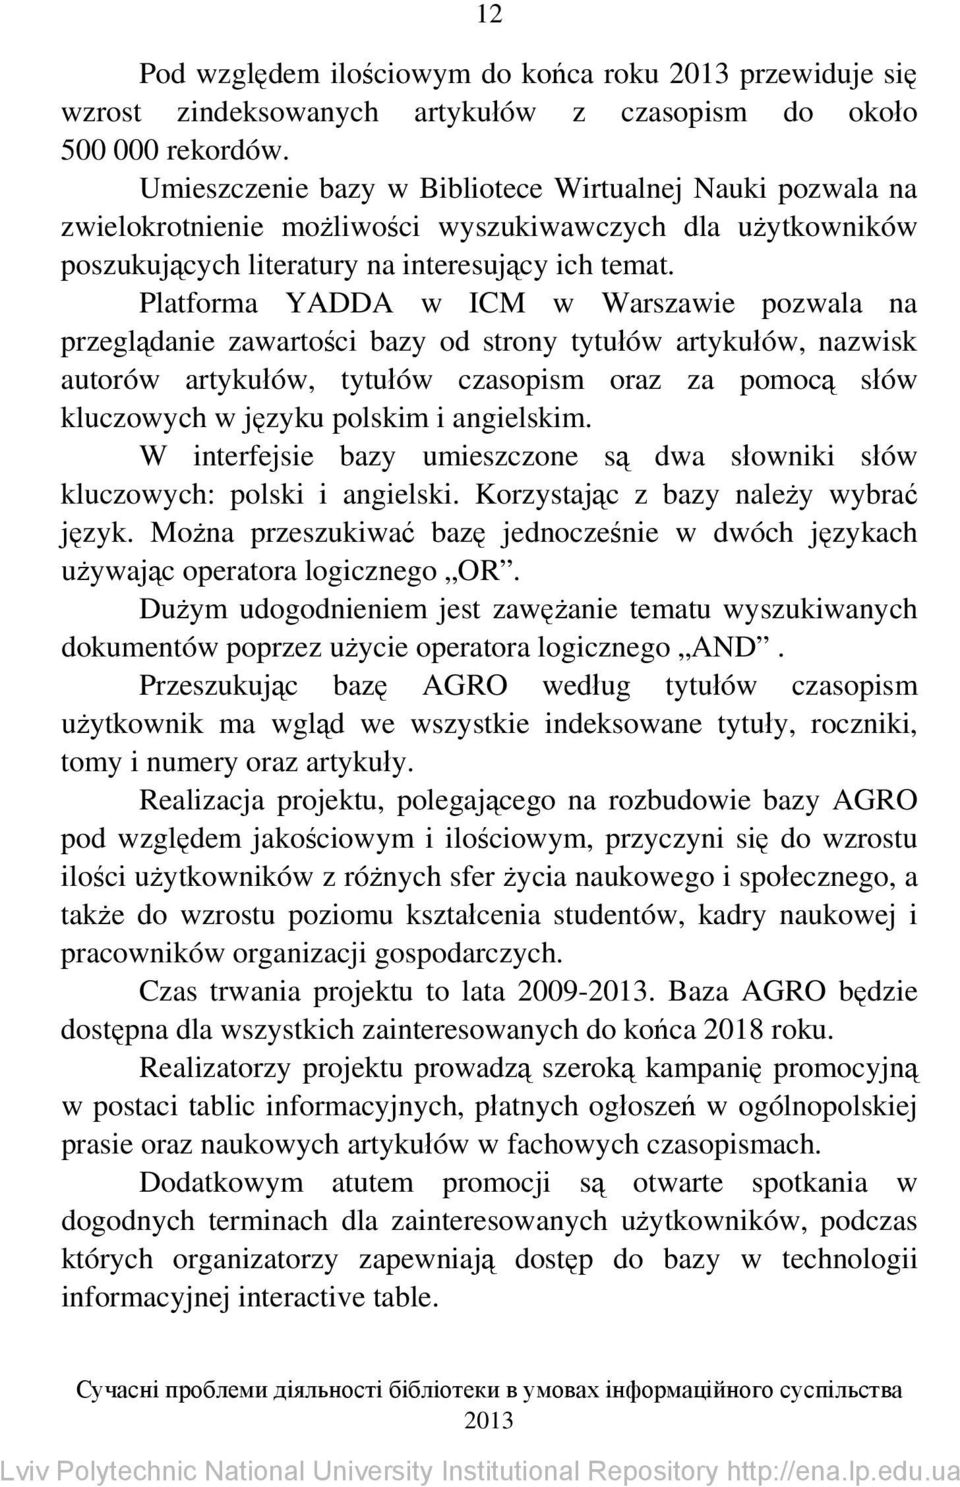 Platforma YADDA w ICM w Warszawie pozwala na przeglądanie zawartości bazy od strony tytułów artykułów, nazwisk autorów artykułów, tytułów czasopism oraz za pomocą słów kluczowych w języku polskim i